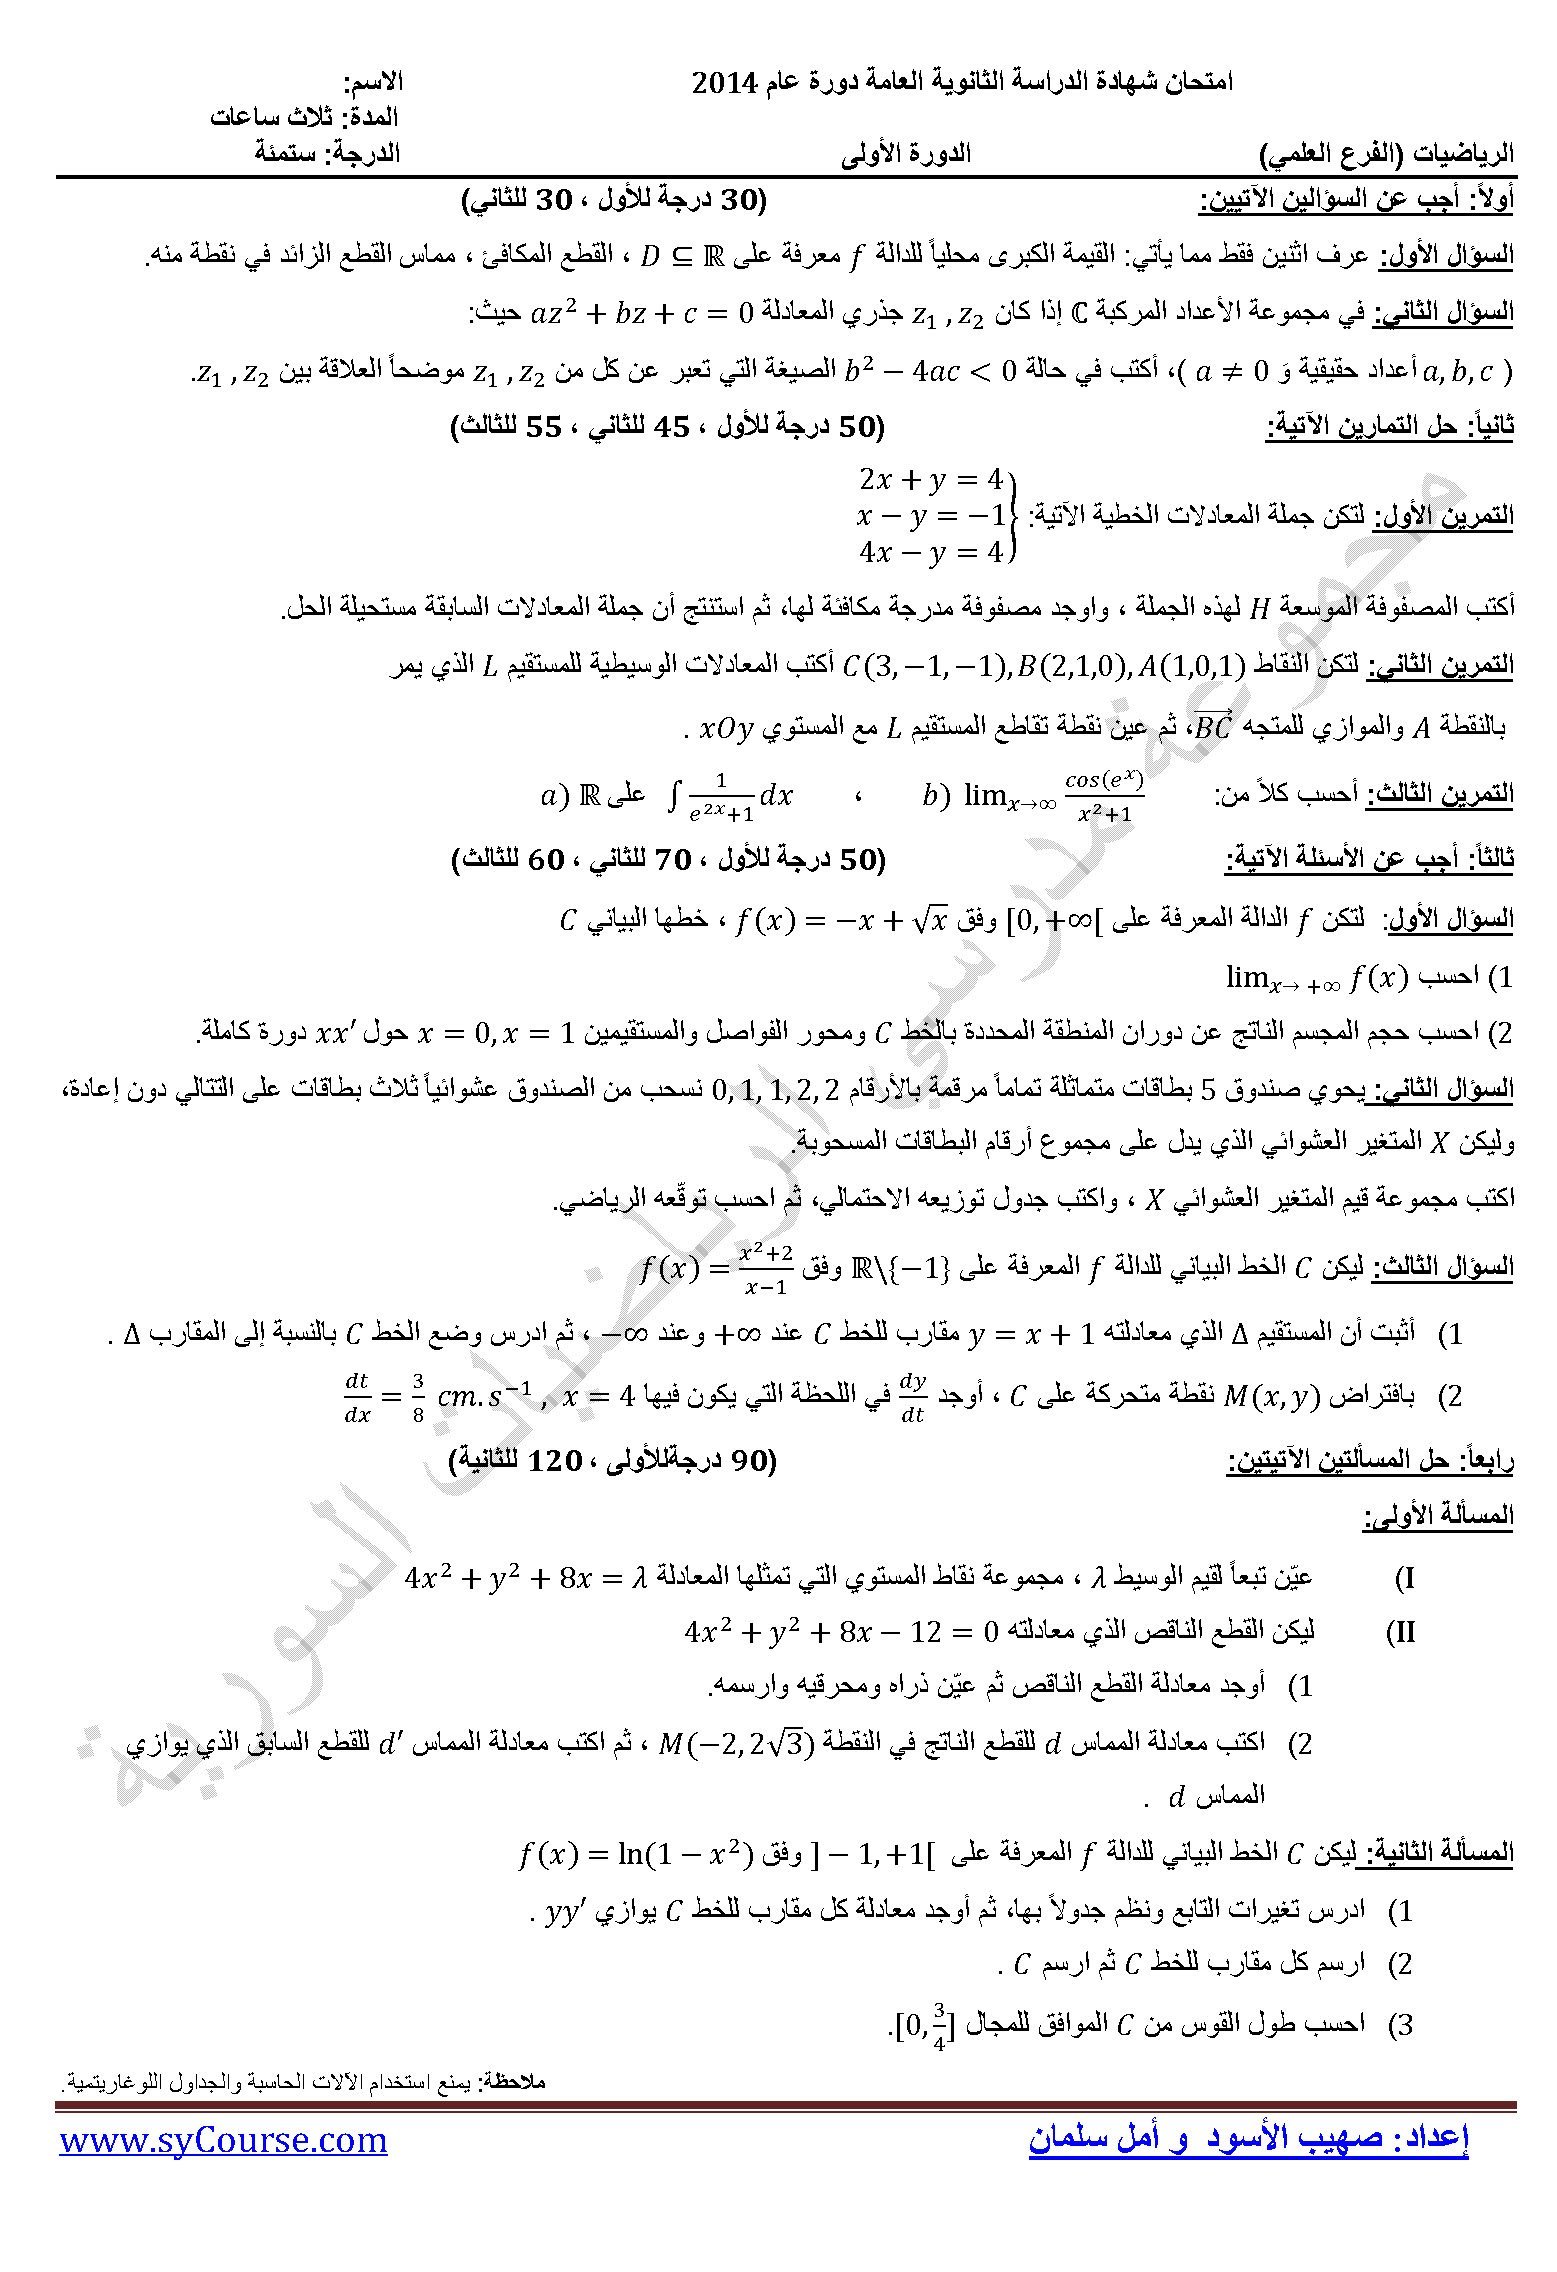 أسئلة الرياضيات للصف الثالث الثانوي العلمي دورة  2014 المنهاج السوري